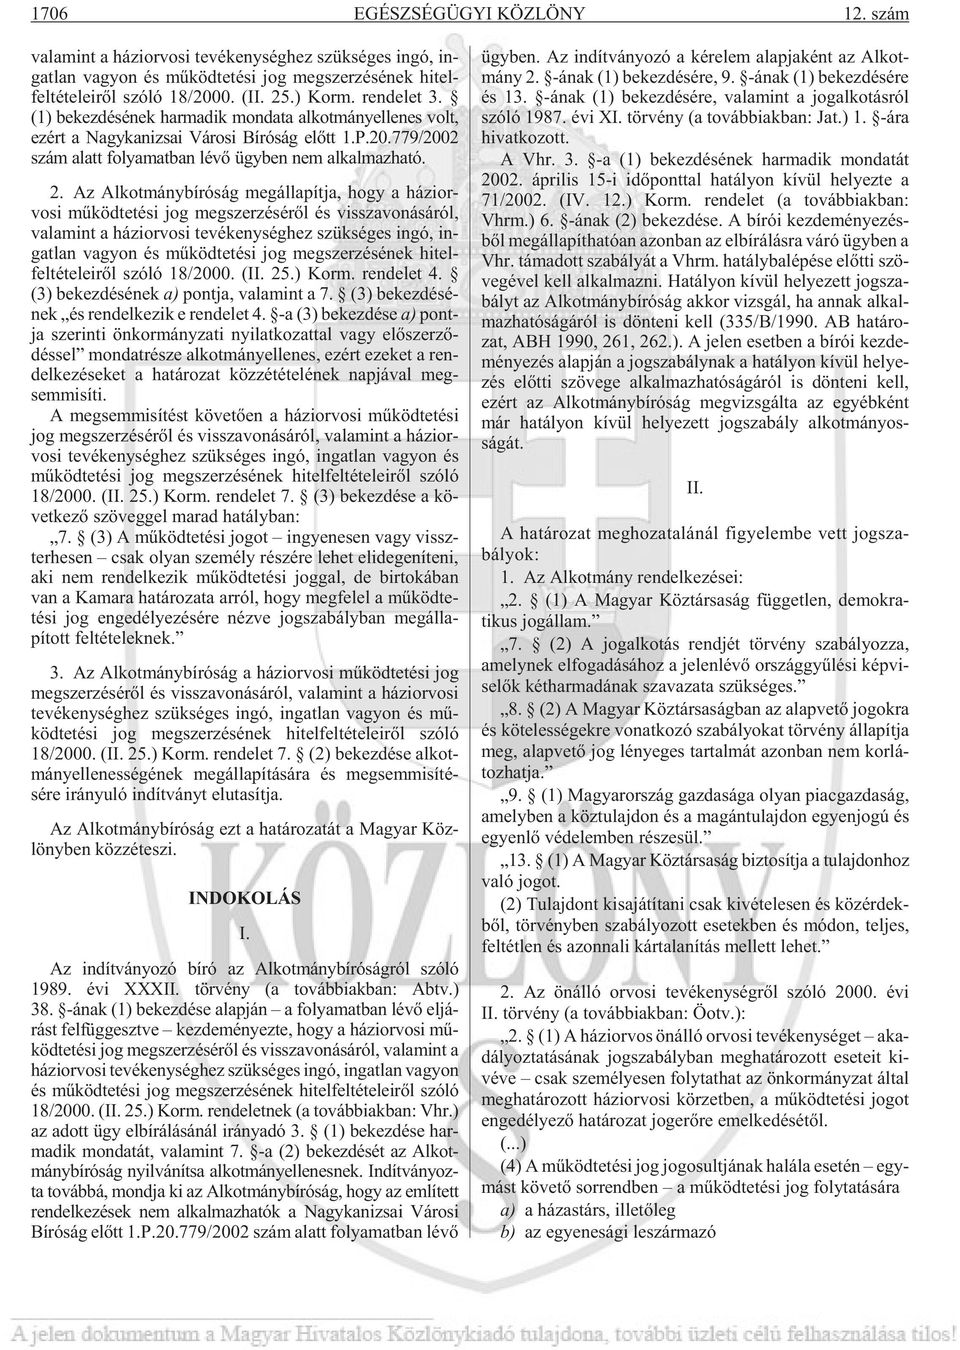 ren de let 3. (1) bekezdésének harmadik mondata alkotmányellenes volt, ezért a Nagykanizsai Városi Bíróság elõtt 1.P.20.779/2002 szám alatt folyamatban lévõ ügyben nem alkalmazható. 2.